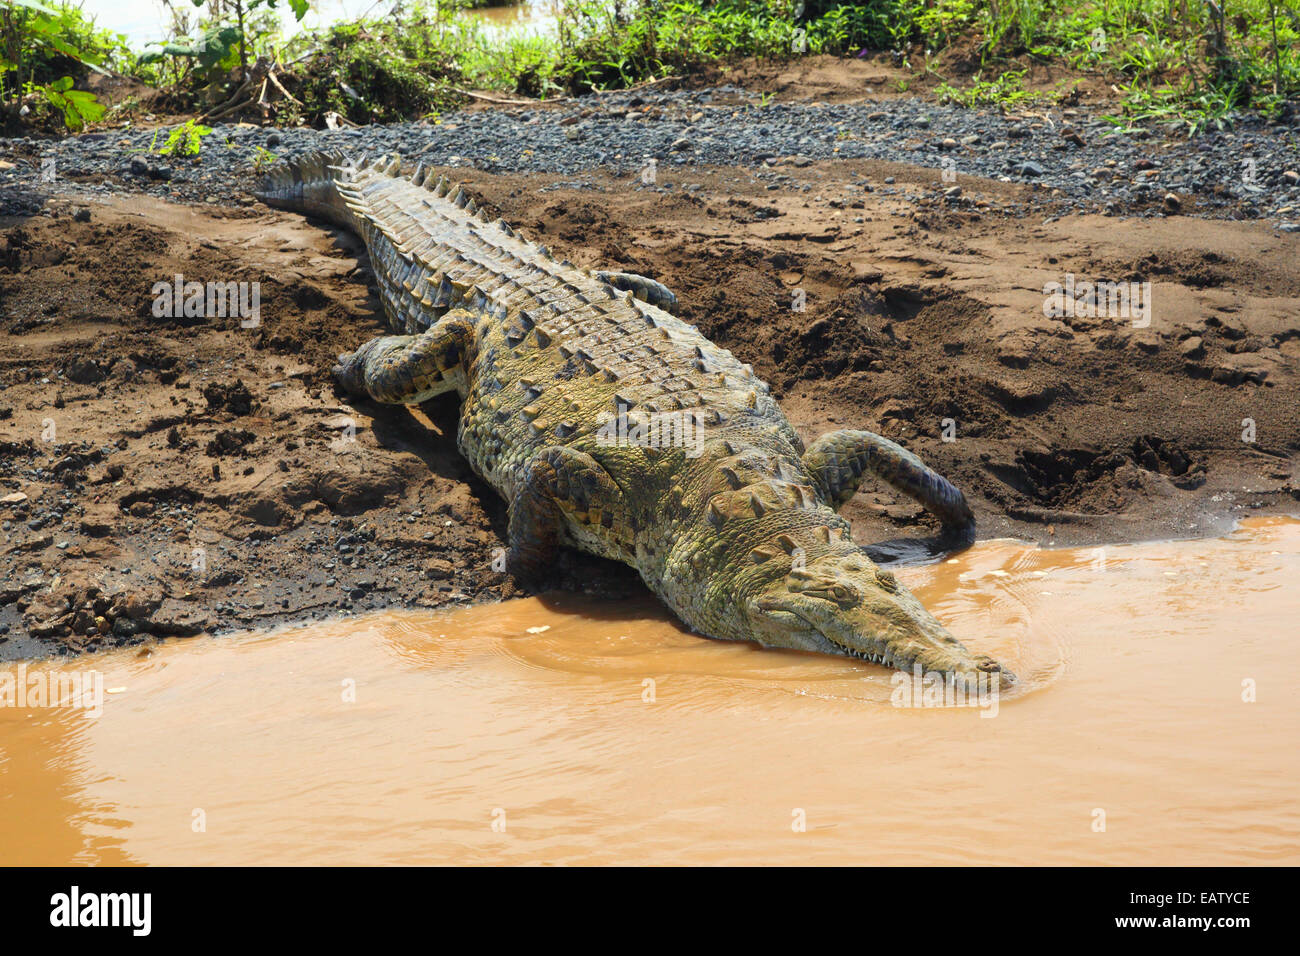 Un coccodrillo americano, Crocodylus acutus, arrampicarsi in un fiume. Foto Stock